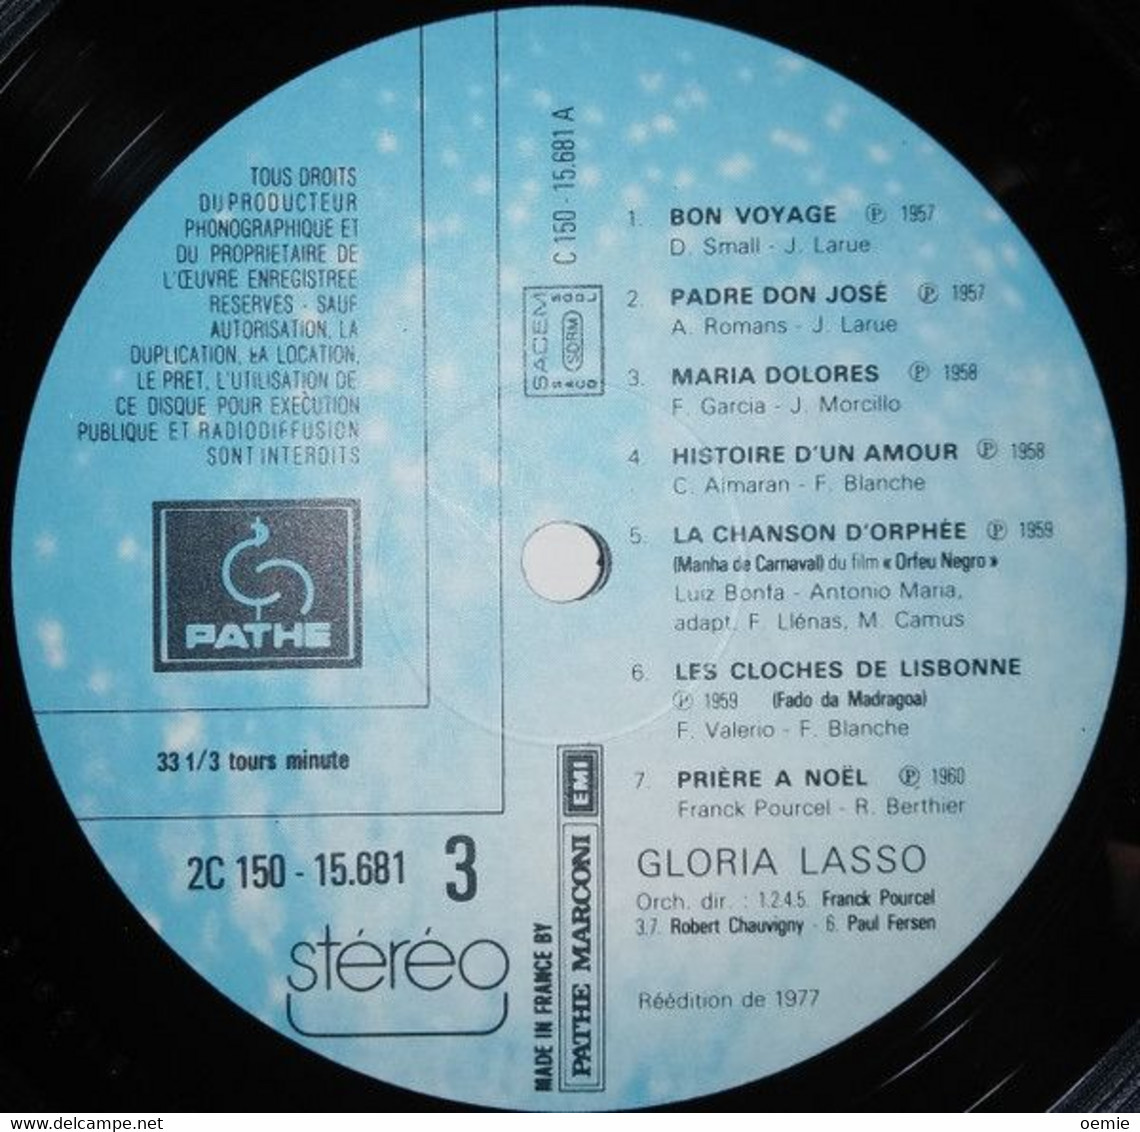 GLORIA  LASSO  °   ALBUM  DOUBLE - Altri - Musica Spagnola